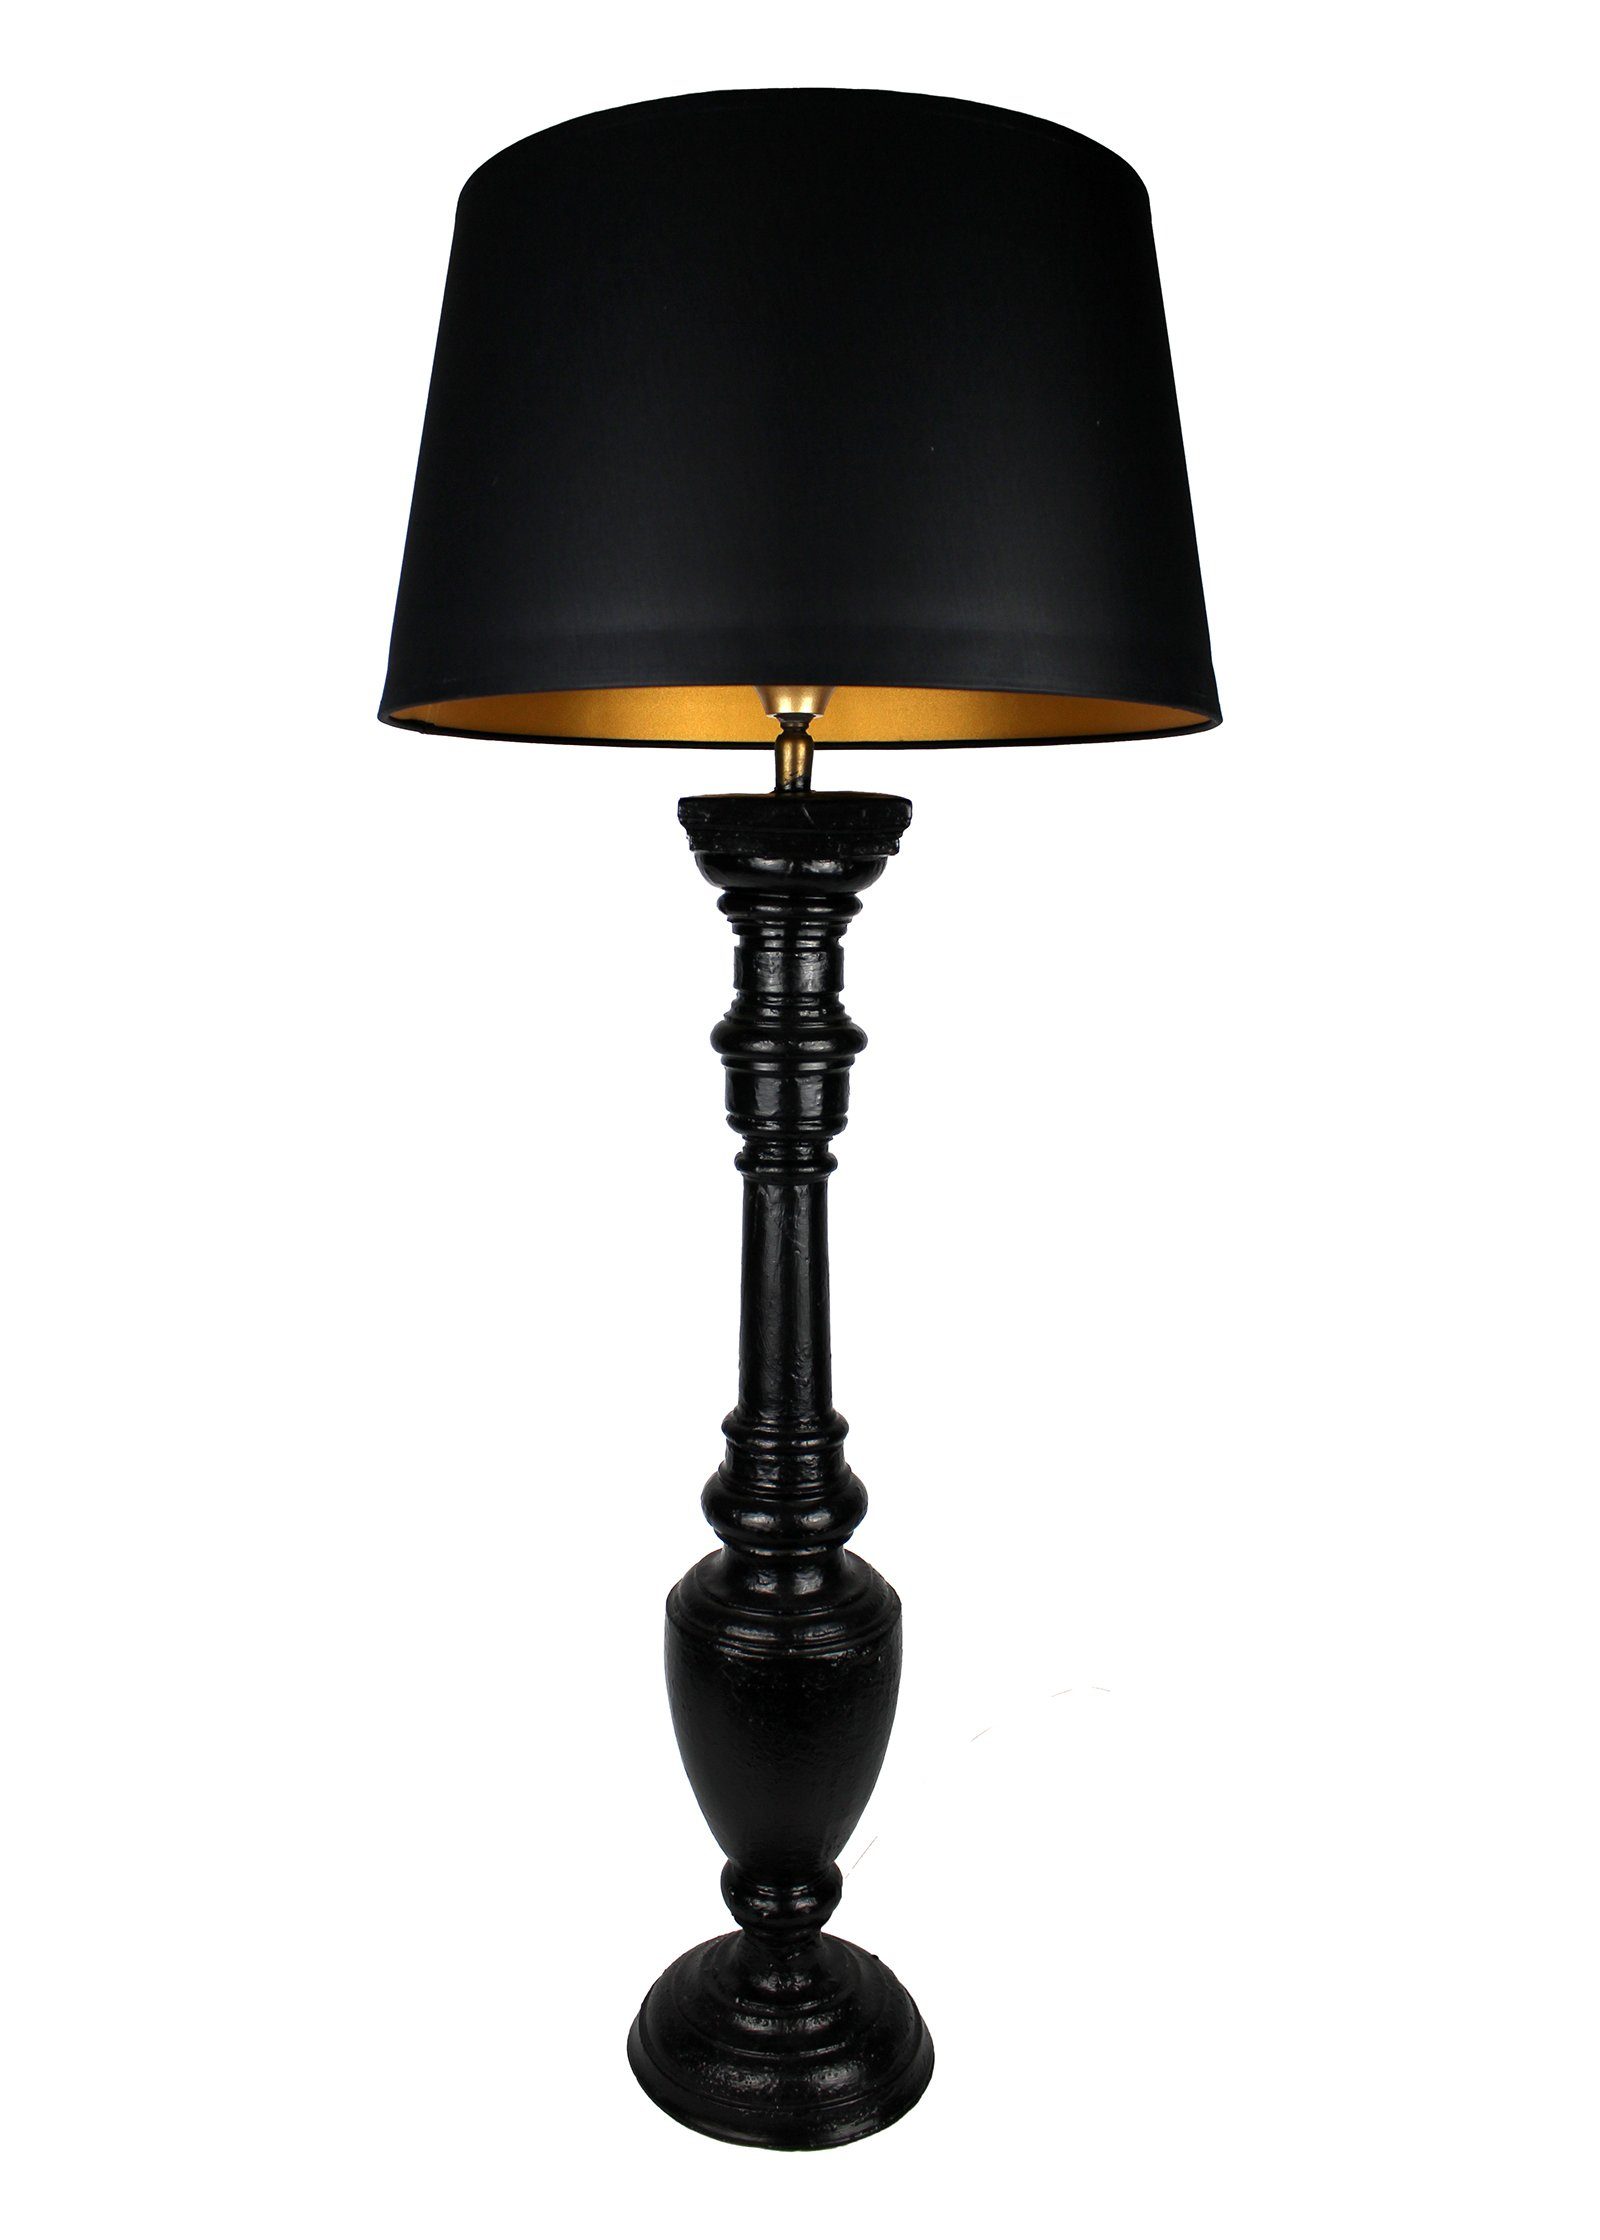 Signature Home Collection Tischleuchte Tischlampe schmal Holz gedrechselt lackiert mit Lampenschirm, ohne Leuchtmittel, warmweiß, handgefertigt in Italien schwarz